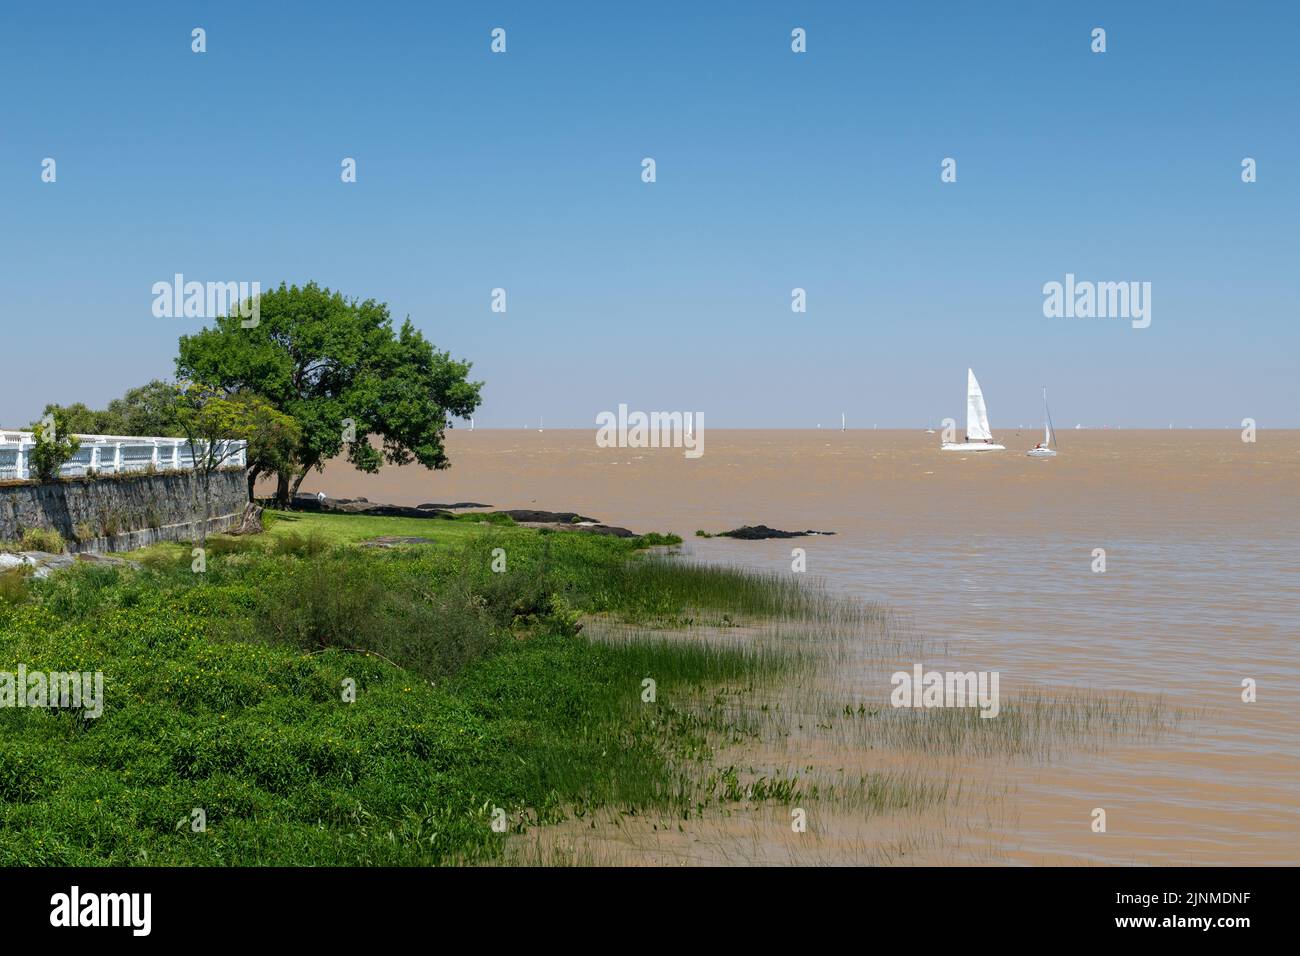 Segelboot im Fluss La Plata in Richtung Hafen Colonia del Sacramento in Colonia, Uruguay. Auf der linken Seite des Bildschirms sind einige Bäume zu sehen. Stockfoto